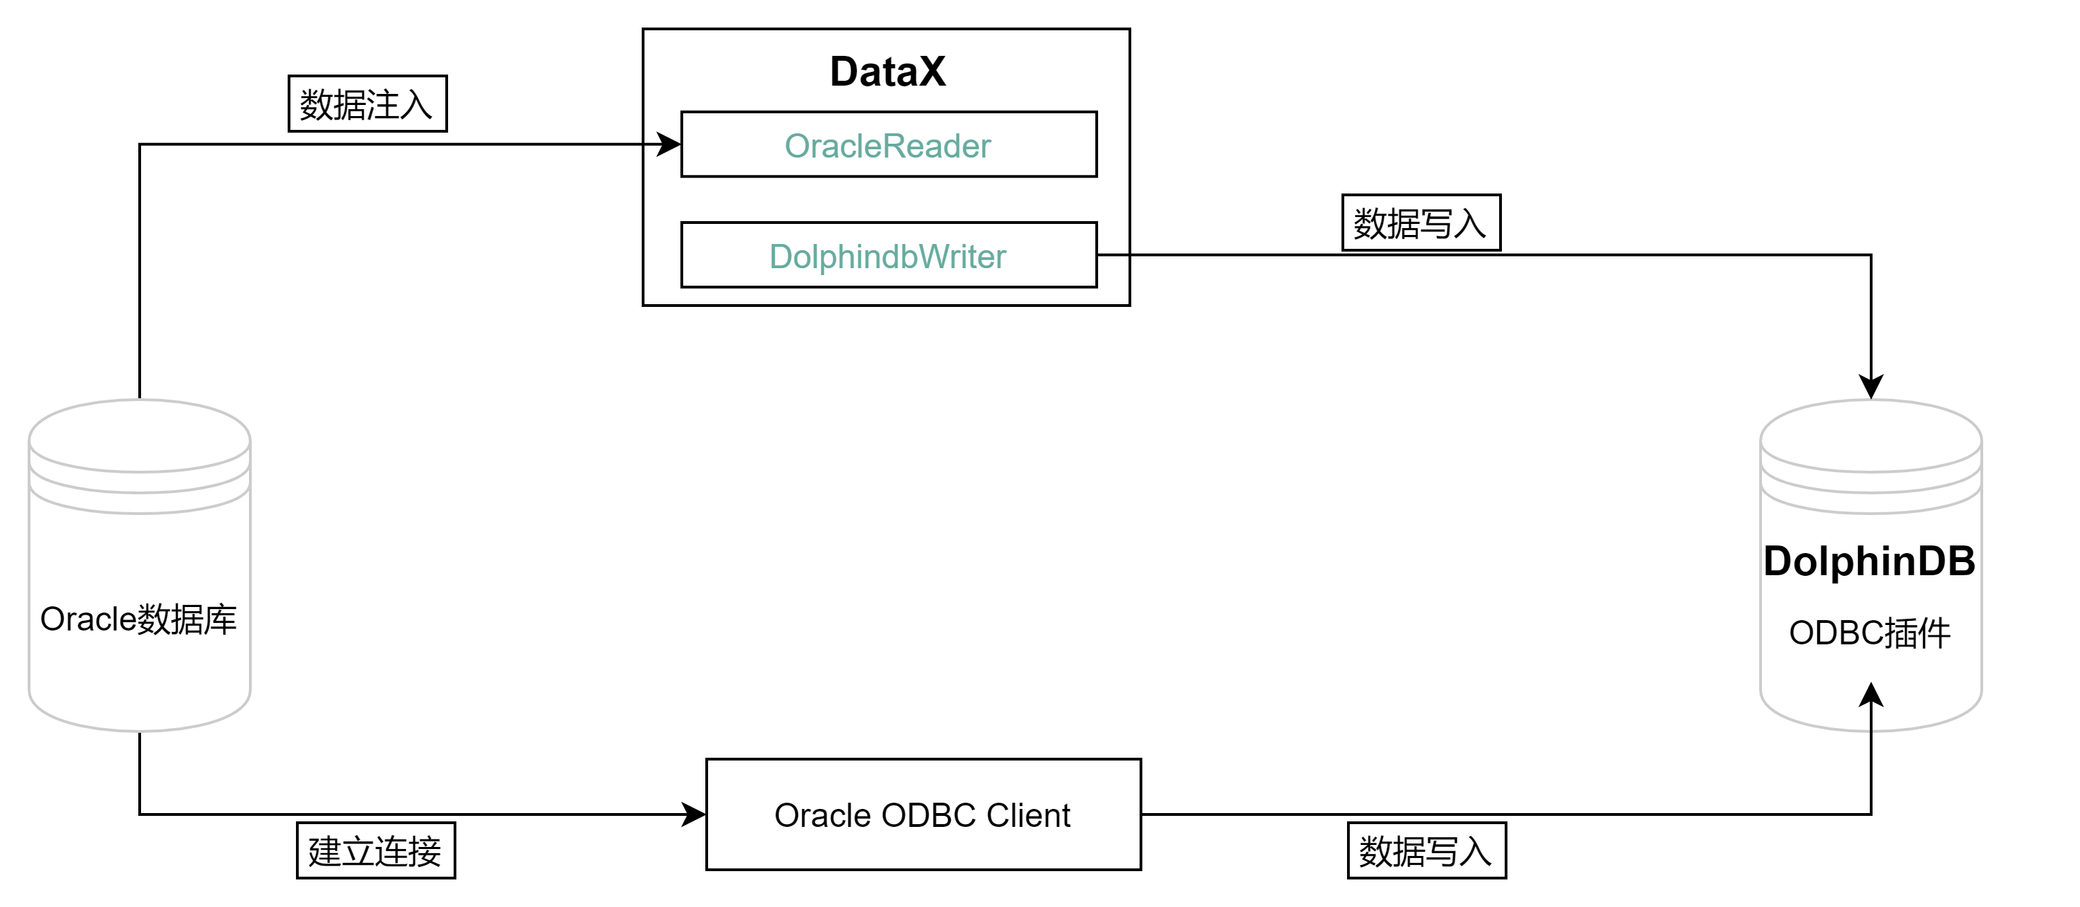 一文详解如何从 Oracle 迁移数据到 DolphinDB